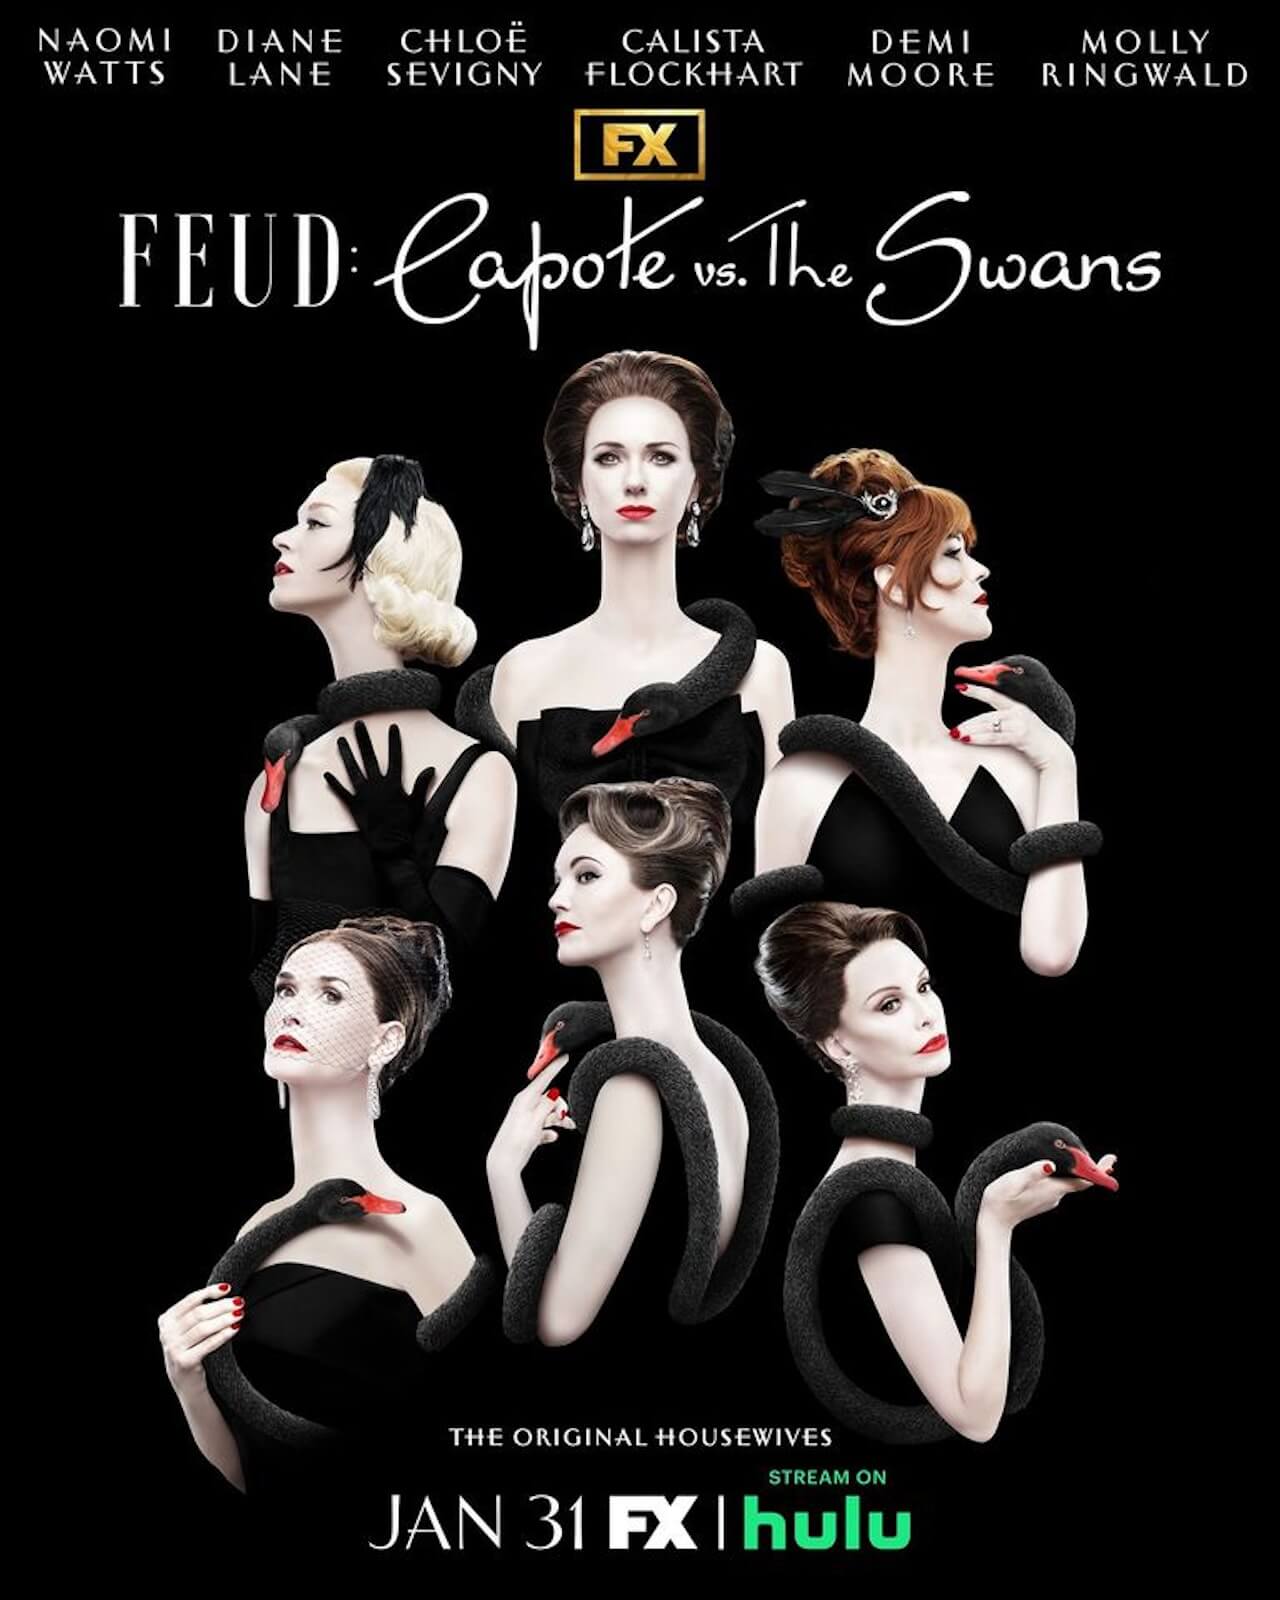 Feud 2: Capote Vs. The Swans, data d'uscita e prime immagini dalla miniserie diretta da Gus Van Sant - Feud 2 - Gay.it